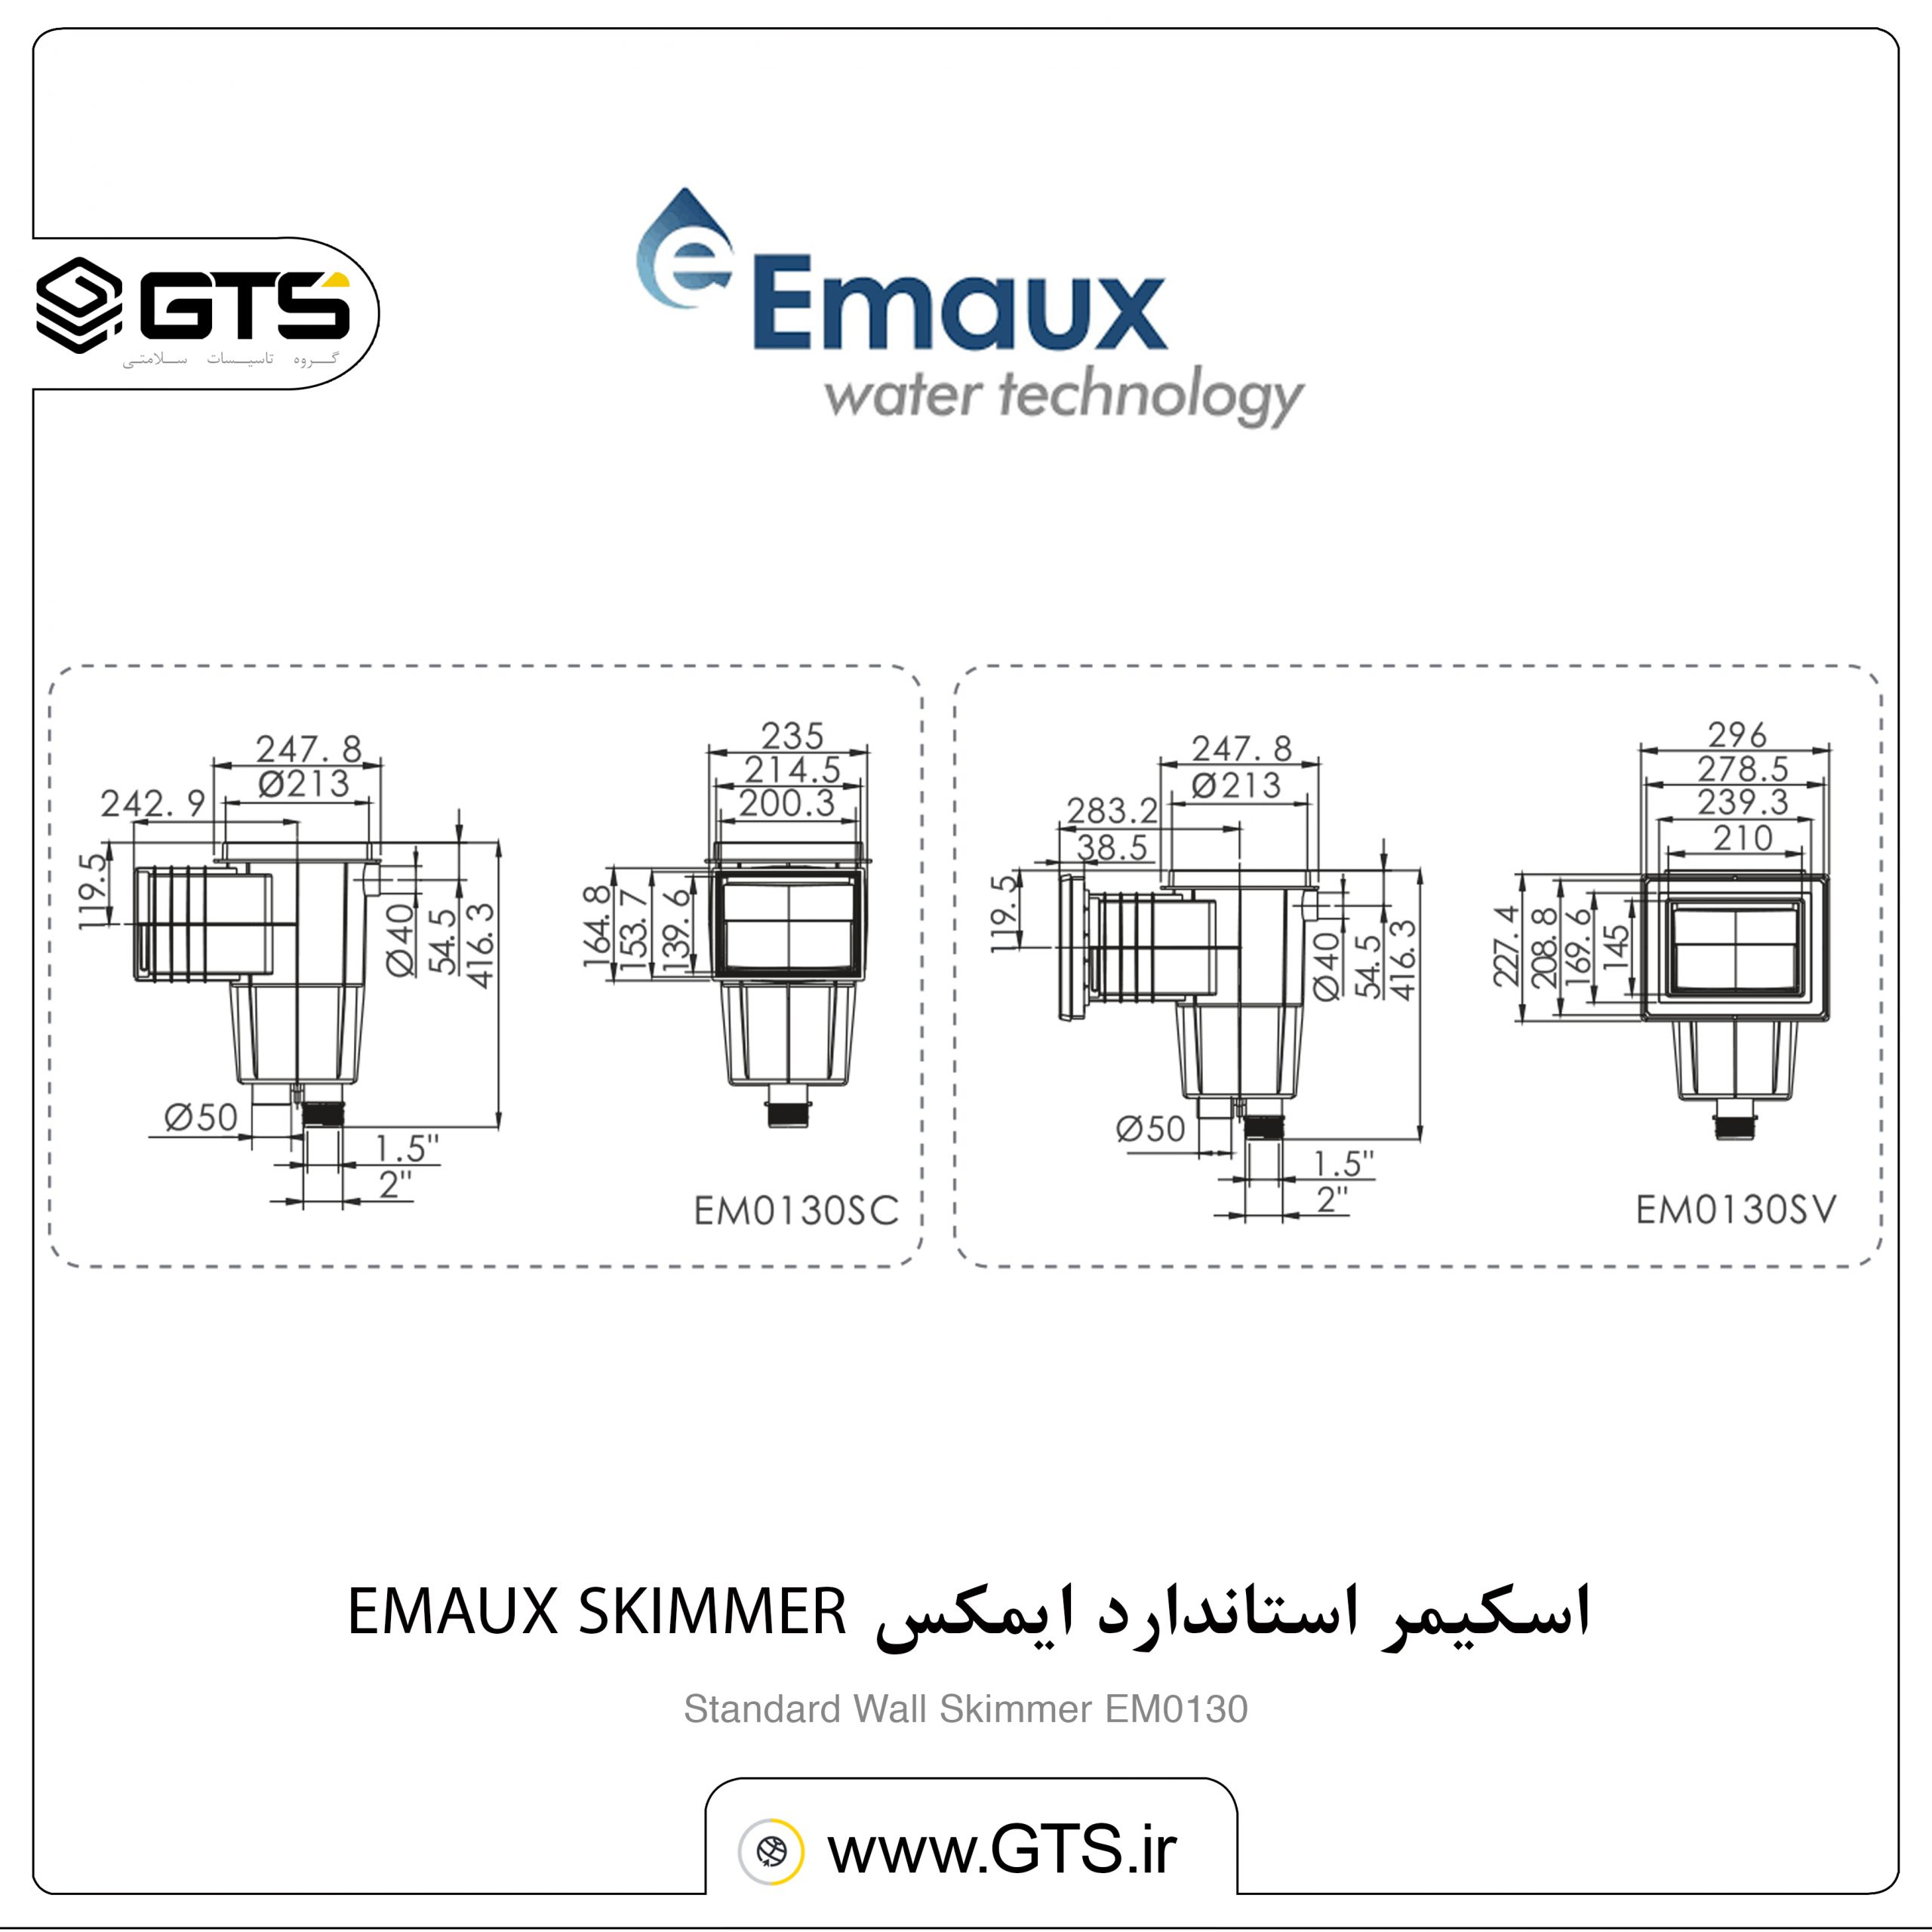 اسکیمر استاندارد ایمکس EMAUX SKIMMER.